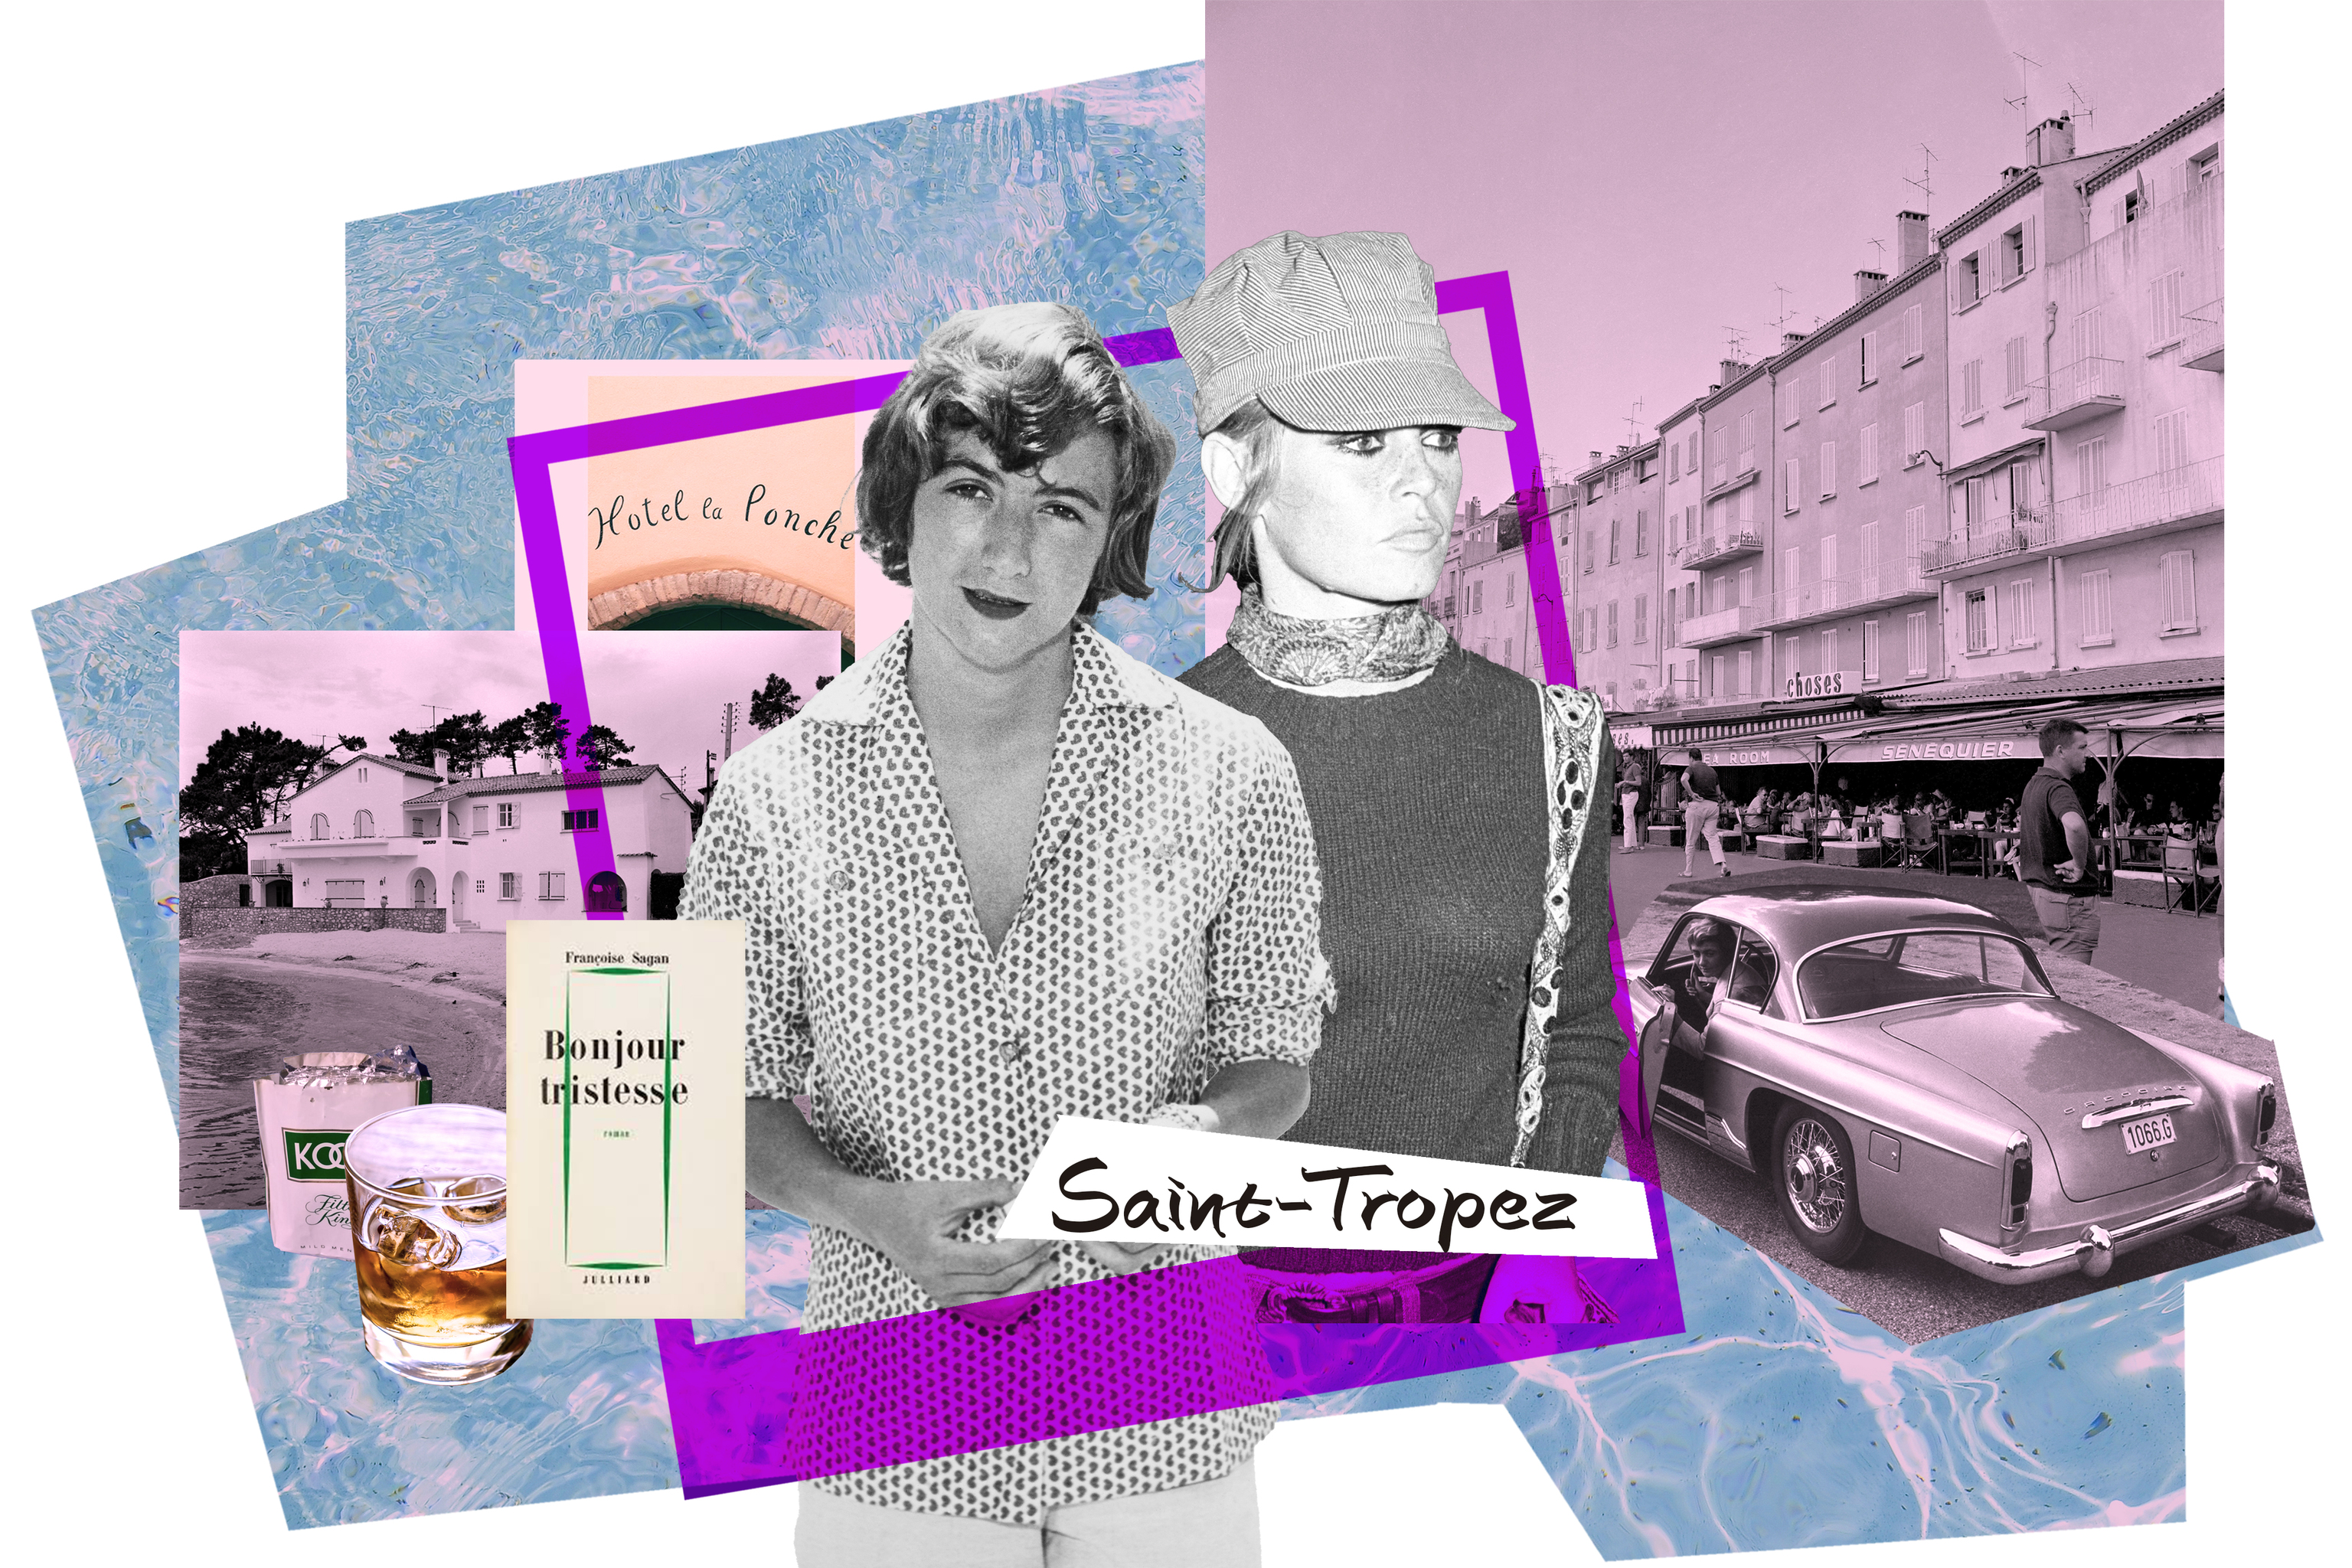 Saint-Tropez: de los hippies chic de ayer a los vips ostentosos de hoy